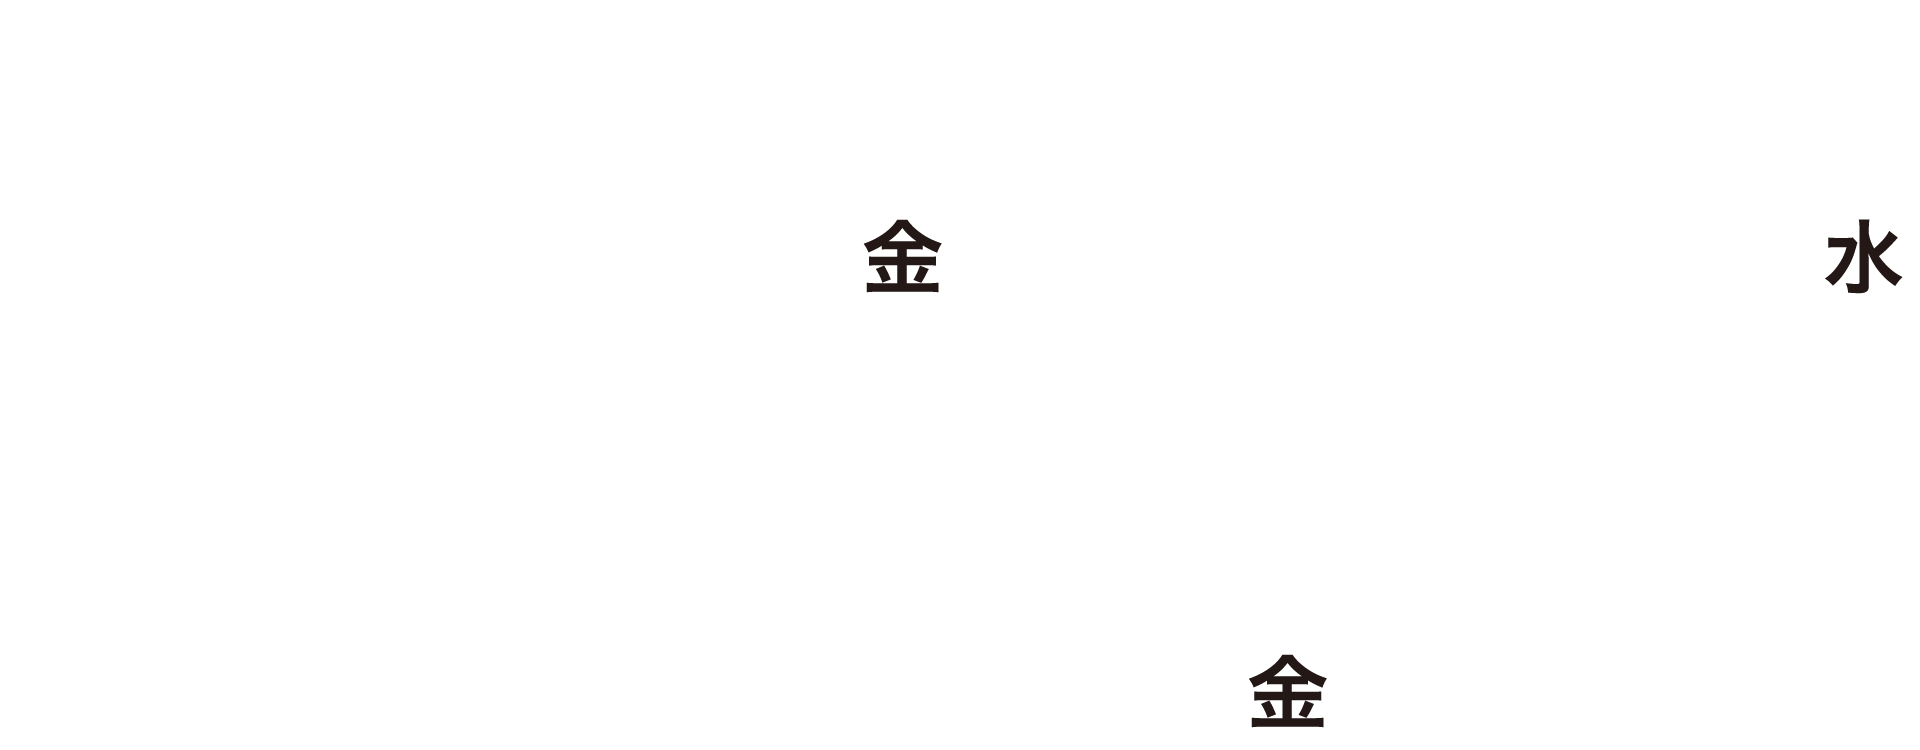 キャンペーン期間 2023年10月27日(金)～2024年1月31日(水)